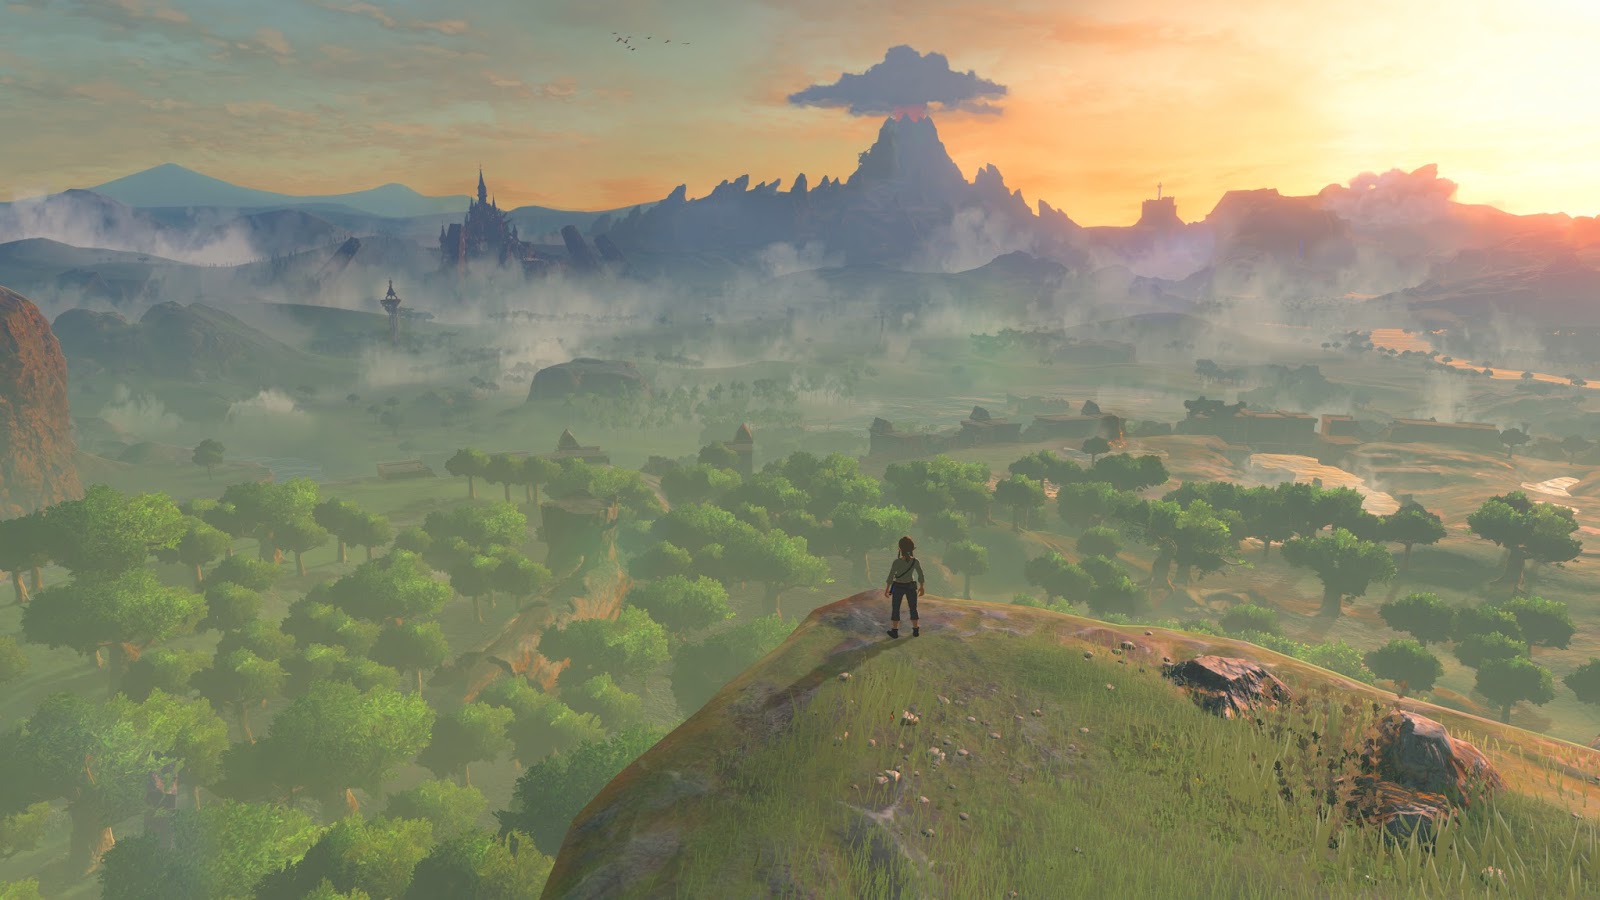 Curiosidade: Demo para Zelda: Breath of the Wild é encontrada nos